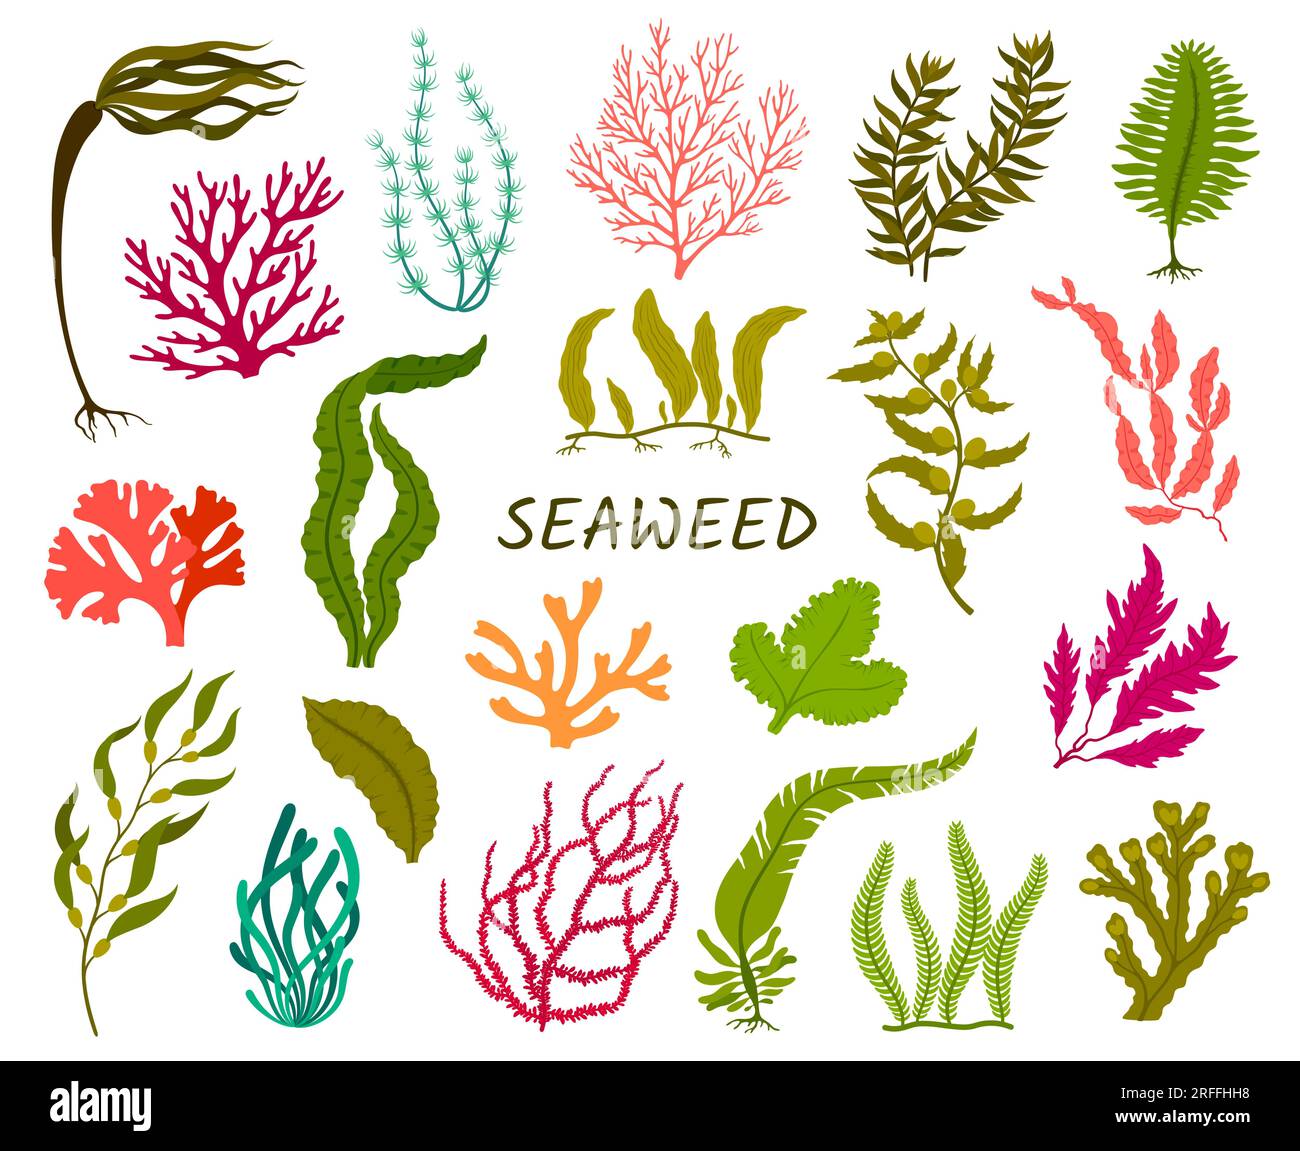 Underwater seaweed plants. Corral reef flora, isolated aquatic plant. Laminaria, macrocystis, fucus and codium, delesseria, rhodymenia, nitella and ca Stock Vector